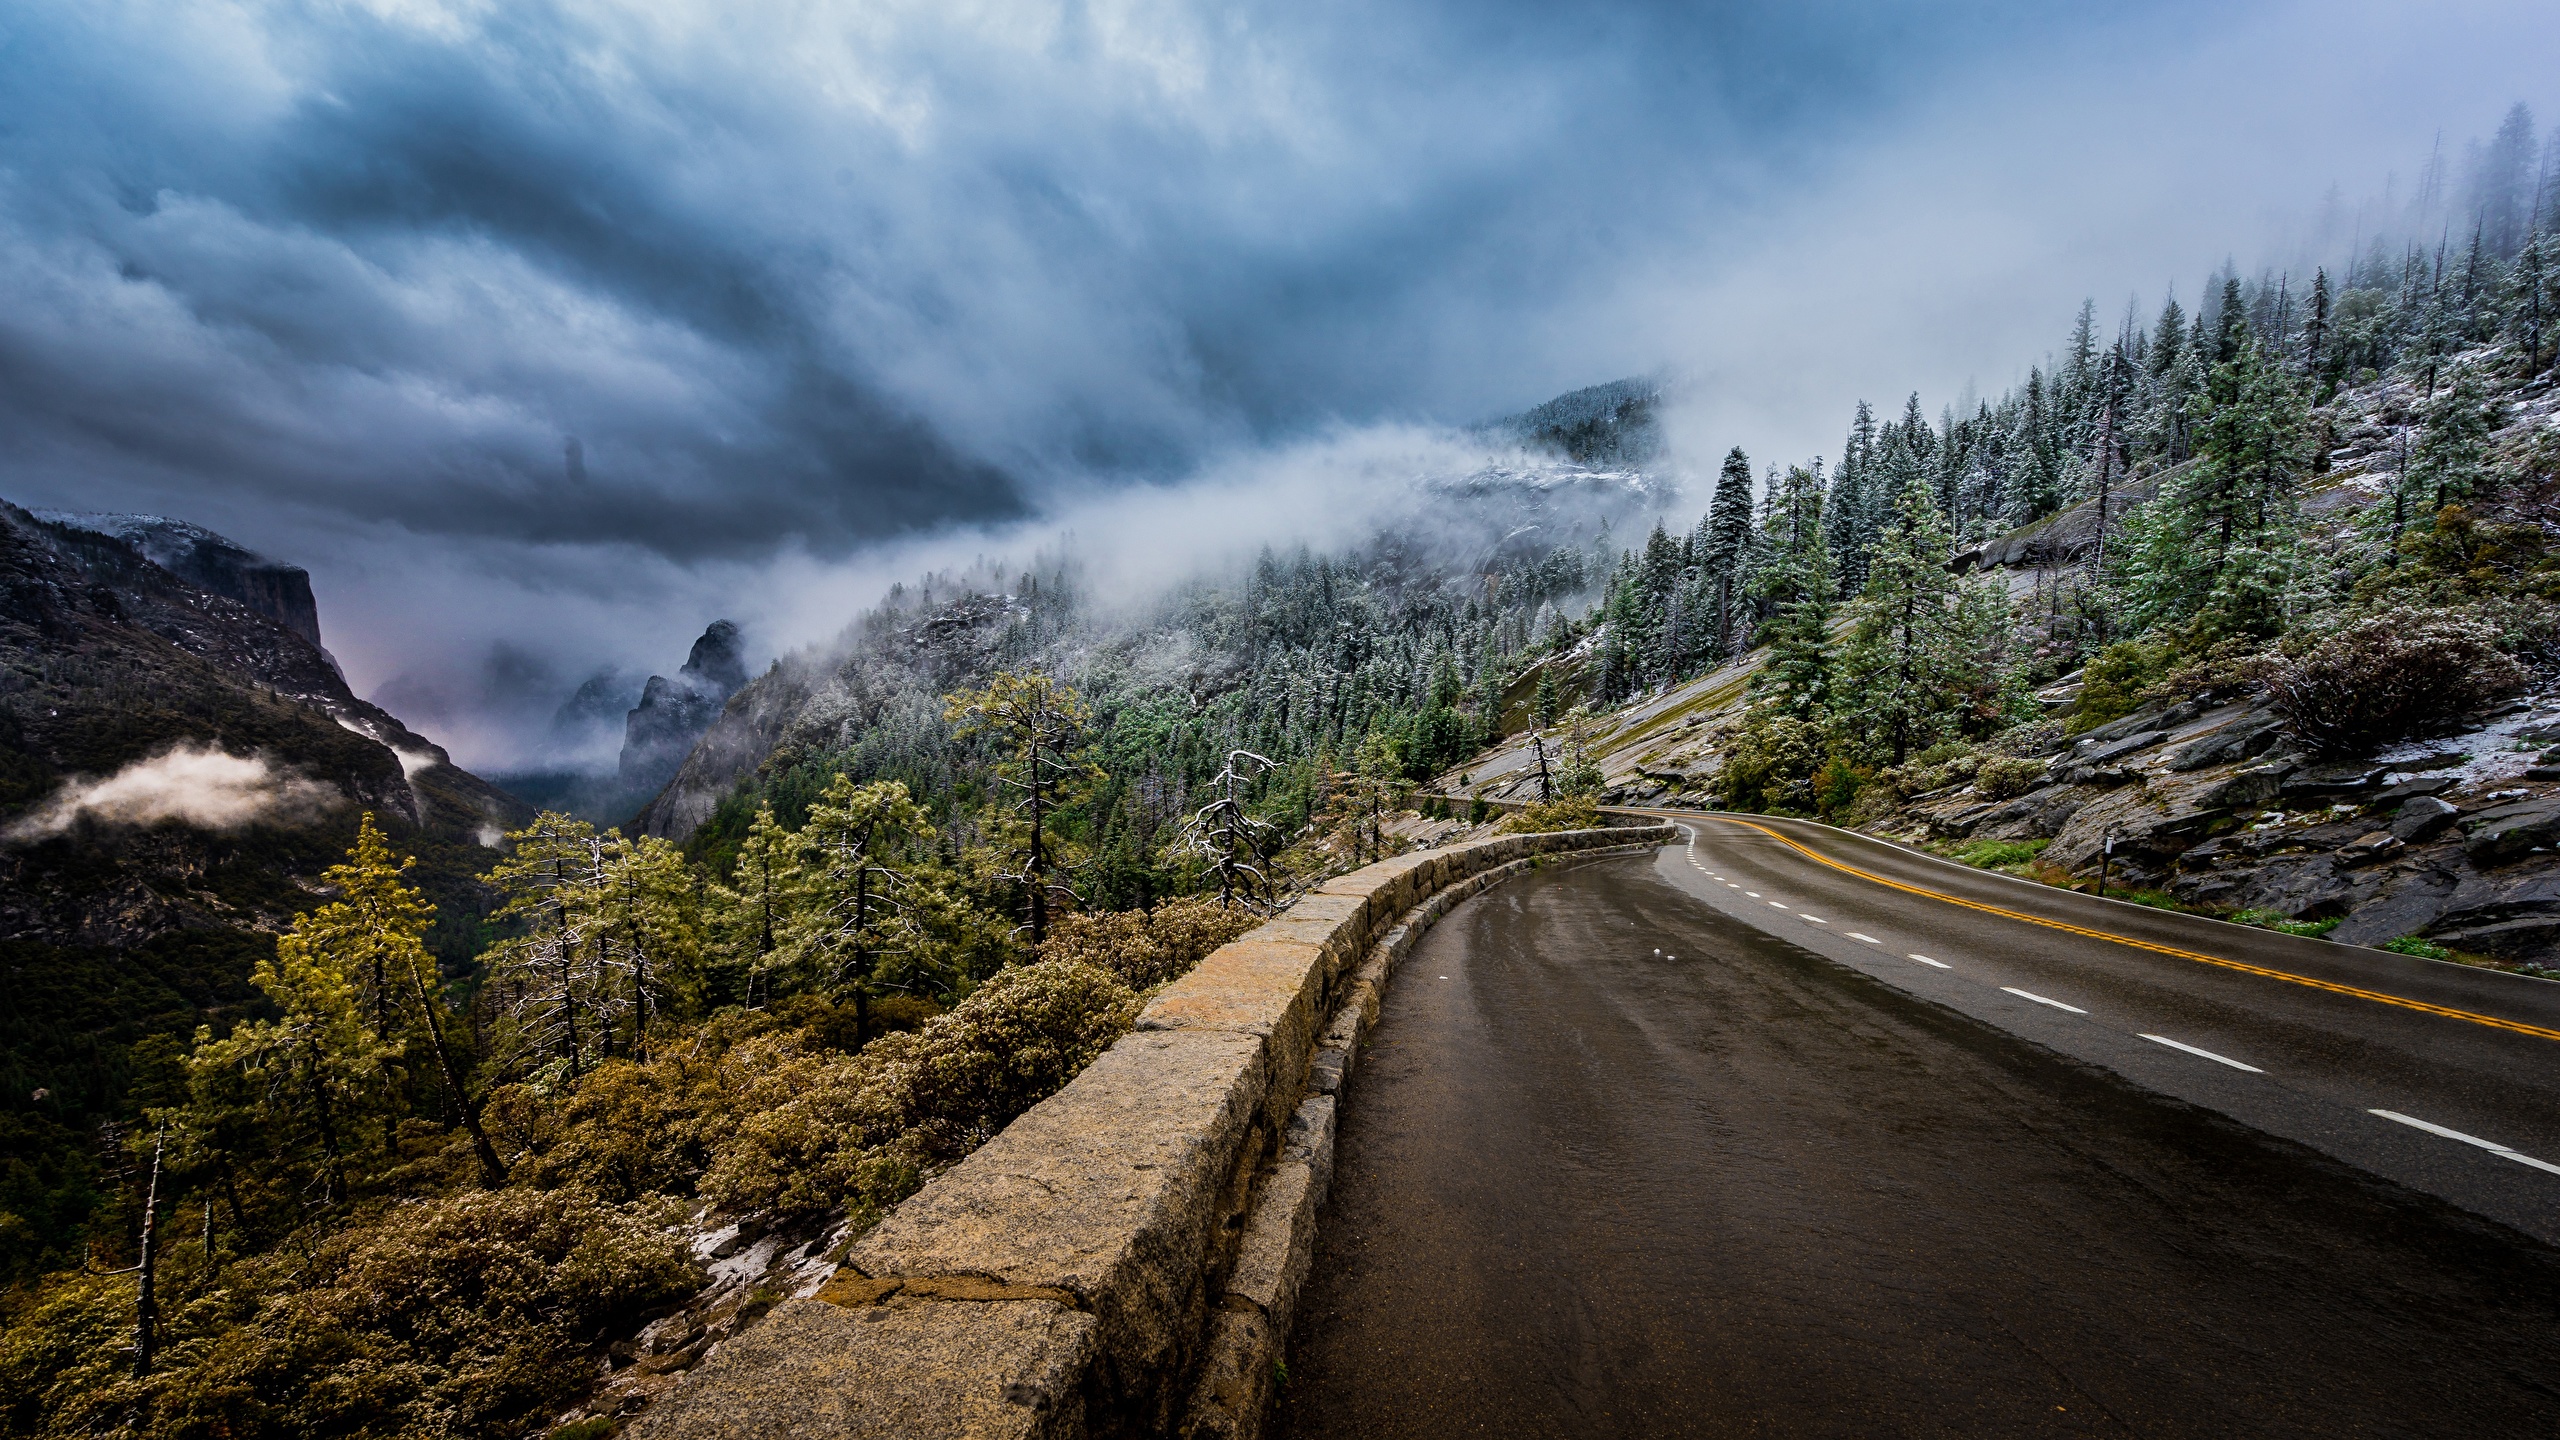 壁紙 2560x1440 道 山 アメリカ合衆国 風景写真 Sierra Nevada 雲 木 ヨセミテ国立公園 霧 カリフォルニア州 自然 ダウンロード 写真